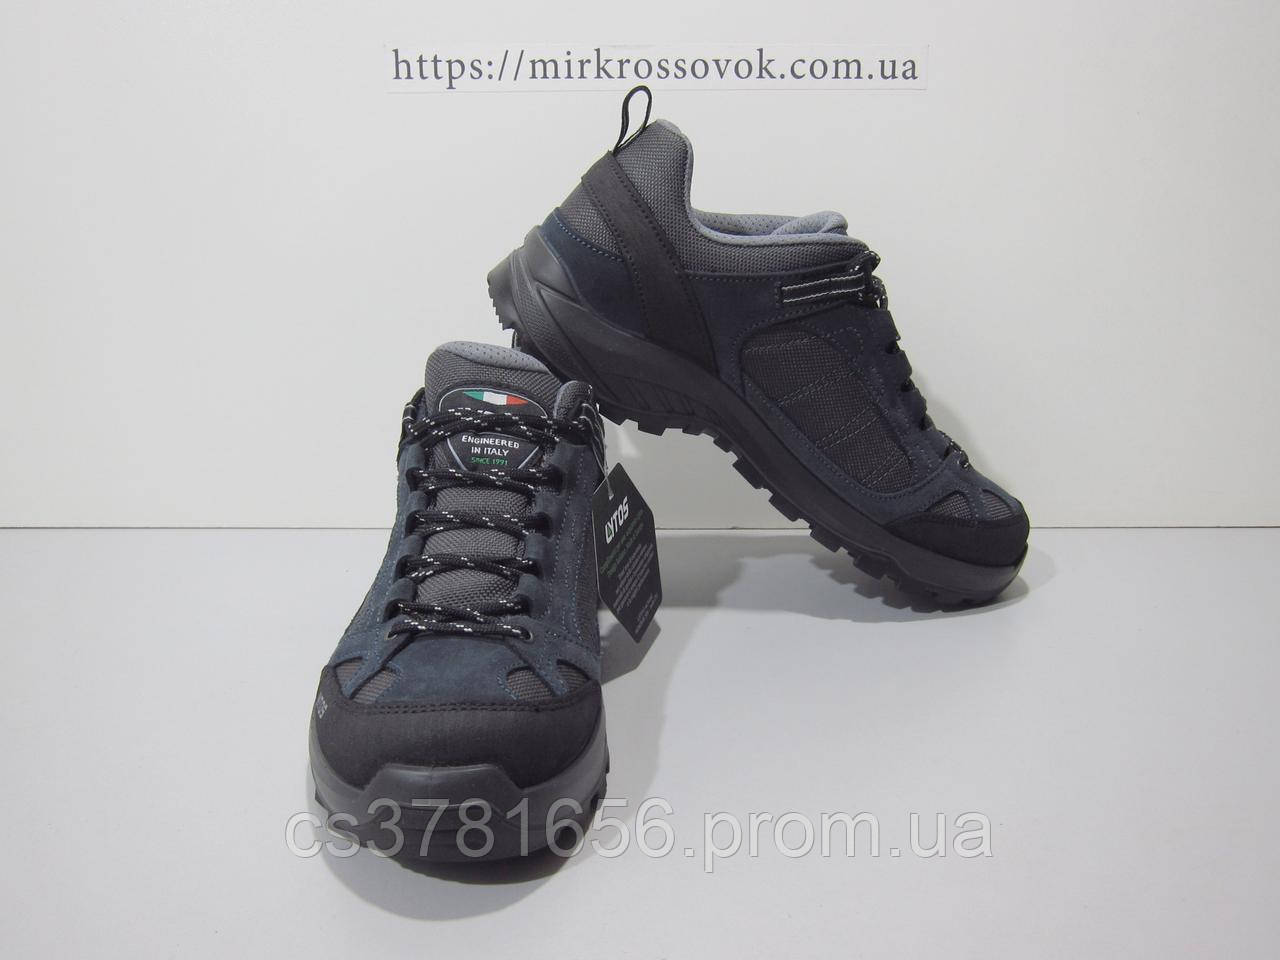 кросівки чоловічі Salomon 361674 LOMA (оригінал), ціна 2490 ₴ - Prom.ua (ID# 1759944178)